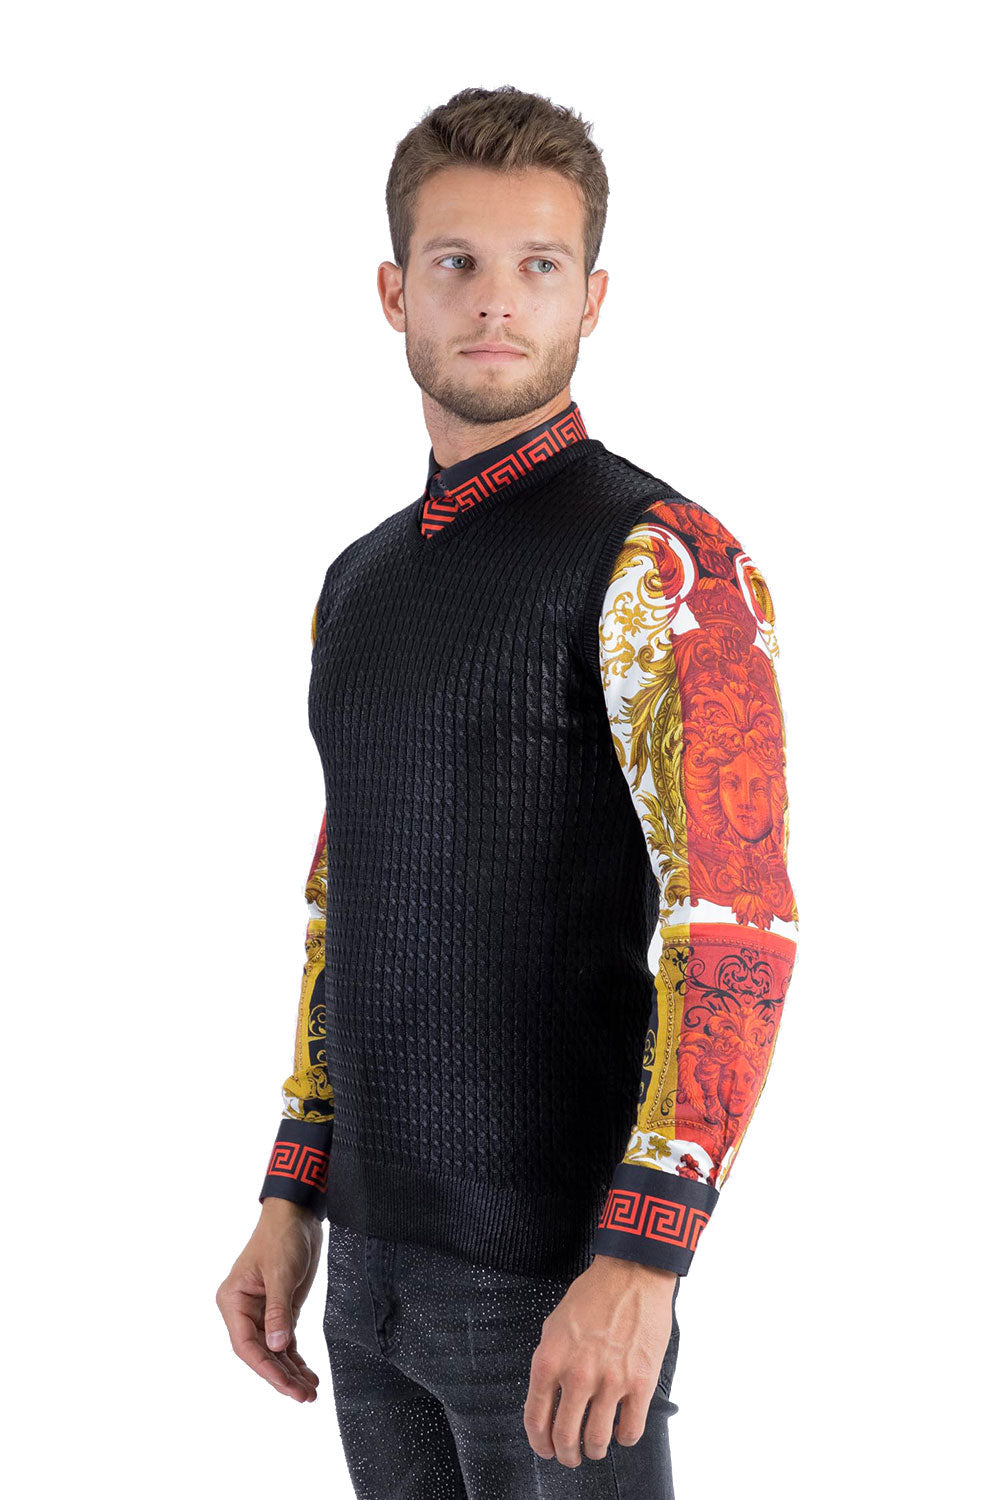 BARABAS Men's Shiny Sleeveless Fisherman Knitted Sweater Vest WV201 Black